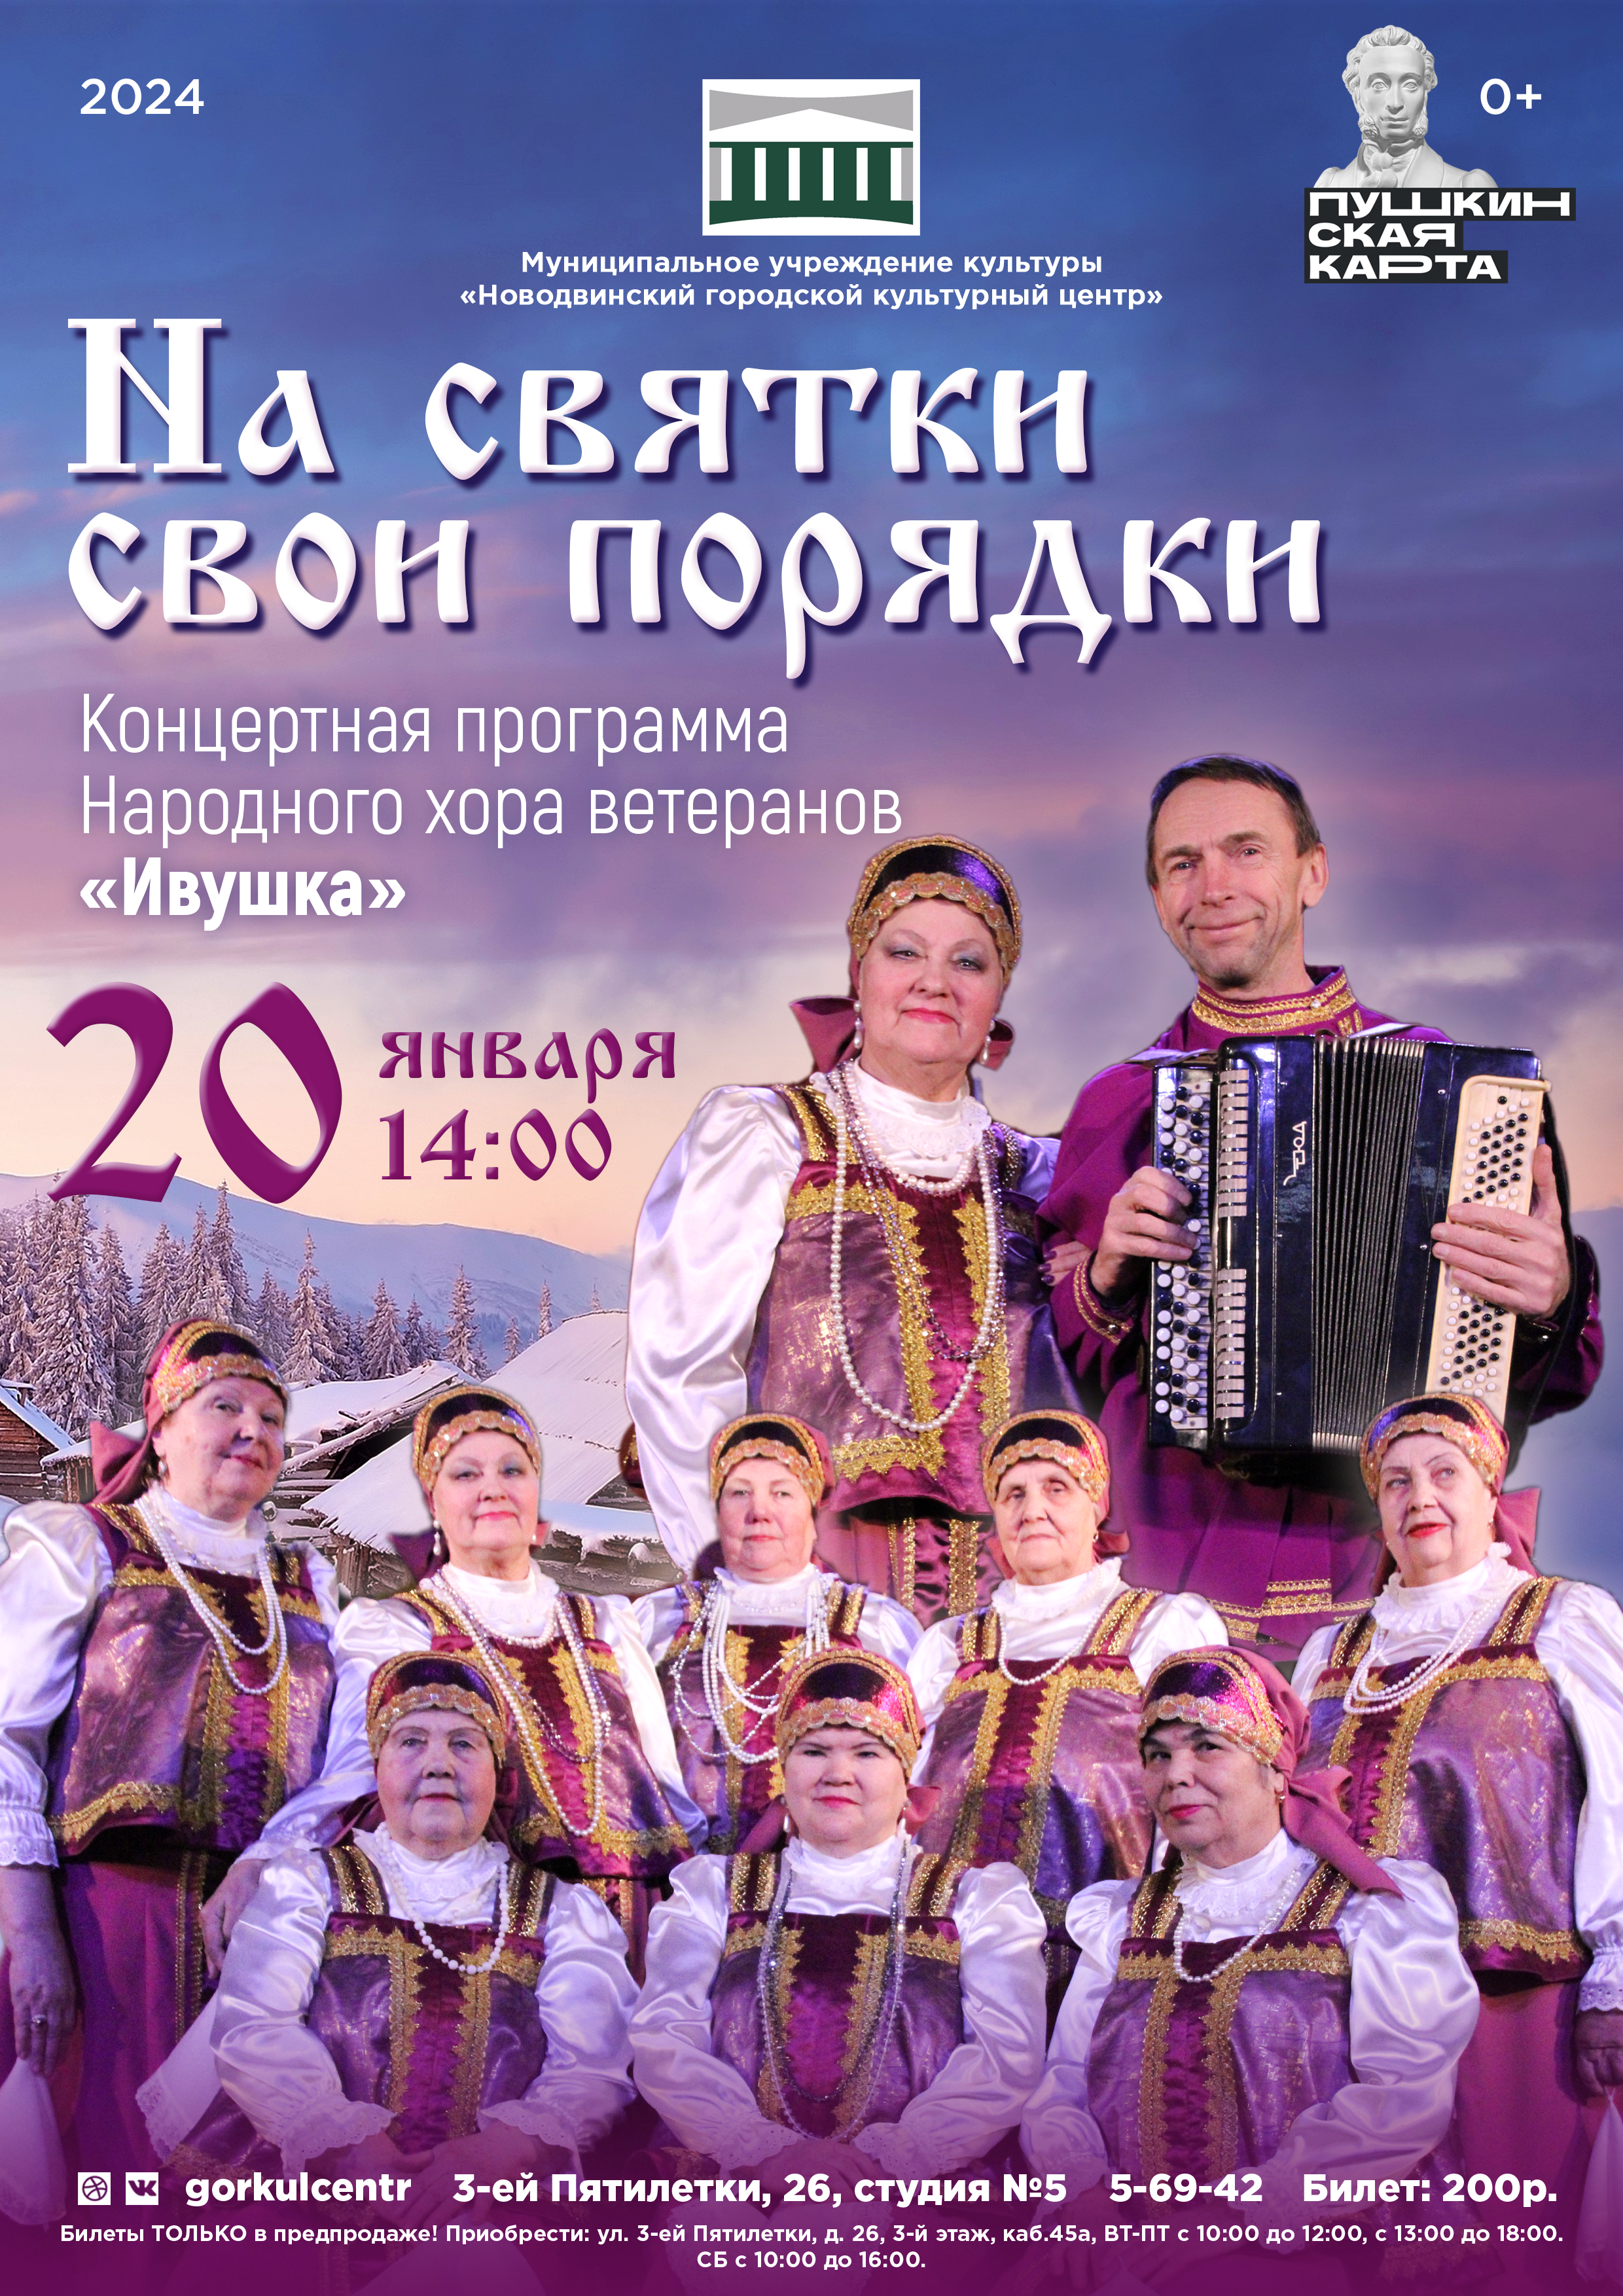 Народный хор ветеранов «Ивушка» представляет свою концертную программу «На Святки свои порядки»!